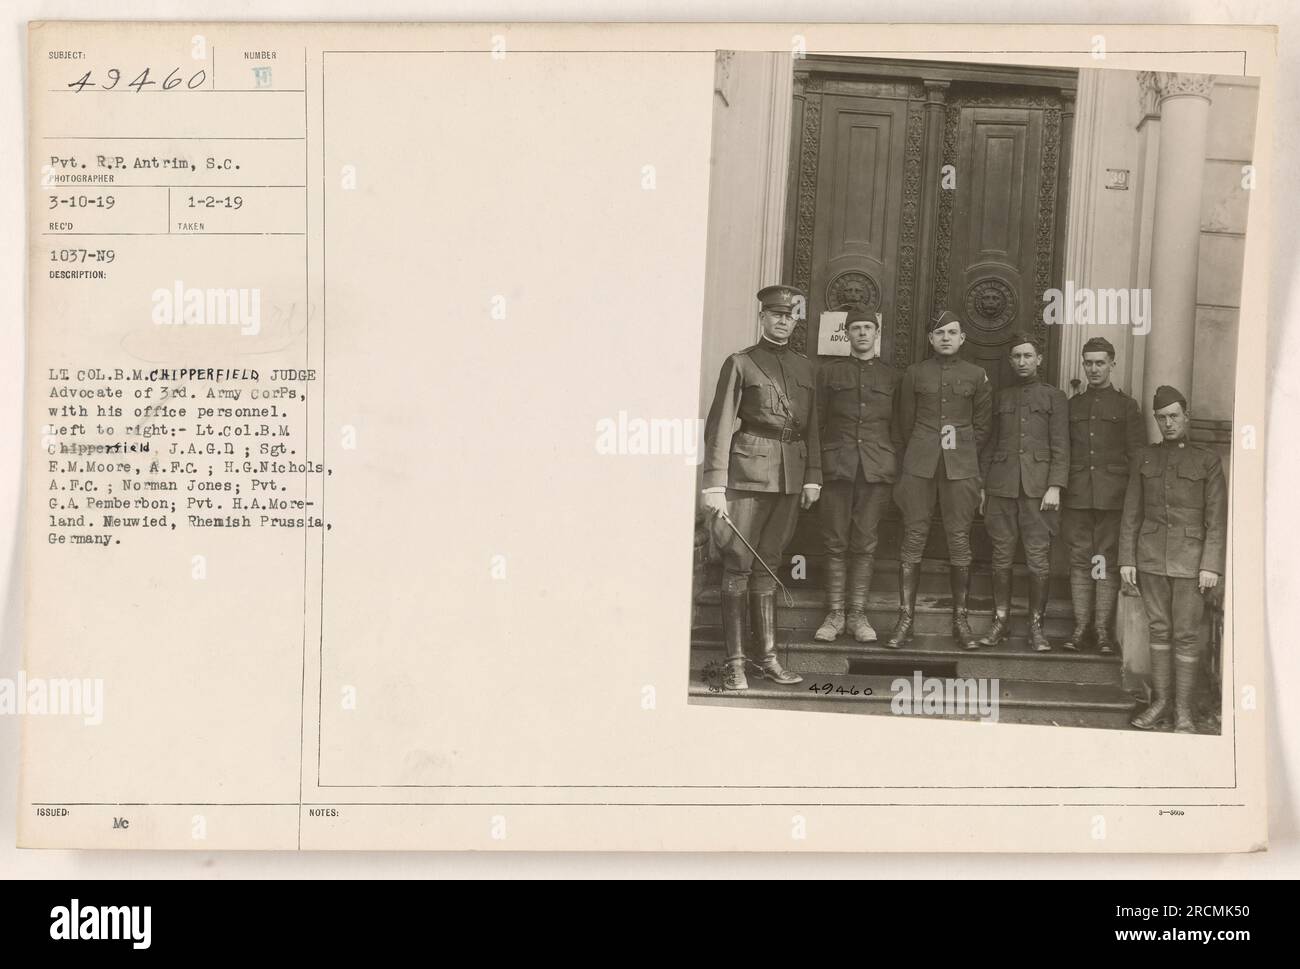 Oberstleutnant B.M. Chipperfield, der Richteranwalt des 3. Armeekorps, ist hier mit seinem Büropersonal in Neuwied, Rhenisch Preußen, Deutschland, abgebildet. Von links nach rechts: Sgt. EM MOORE, A.F.C.; H.G. Nichols, A.F.C.; Norman Jones; Pvt. G.A. Pemberbon; Pvt. H. A. Moreland. Foto aufgenommen am 2. Januar 1919. Stockfoto